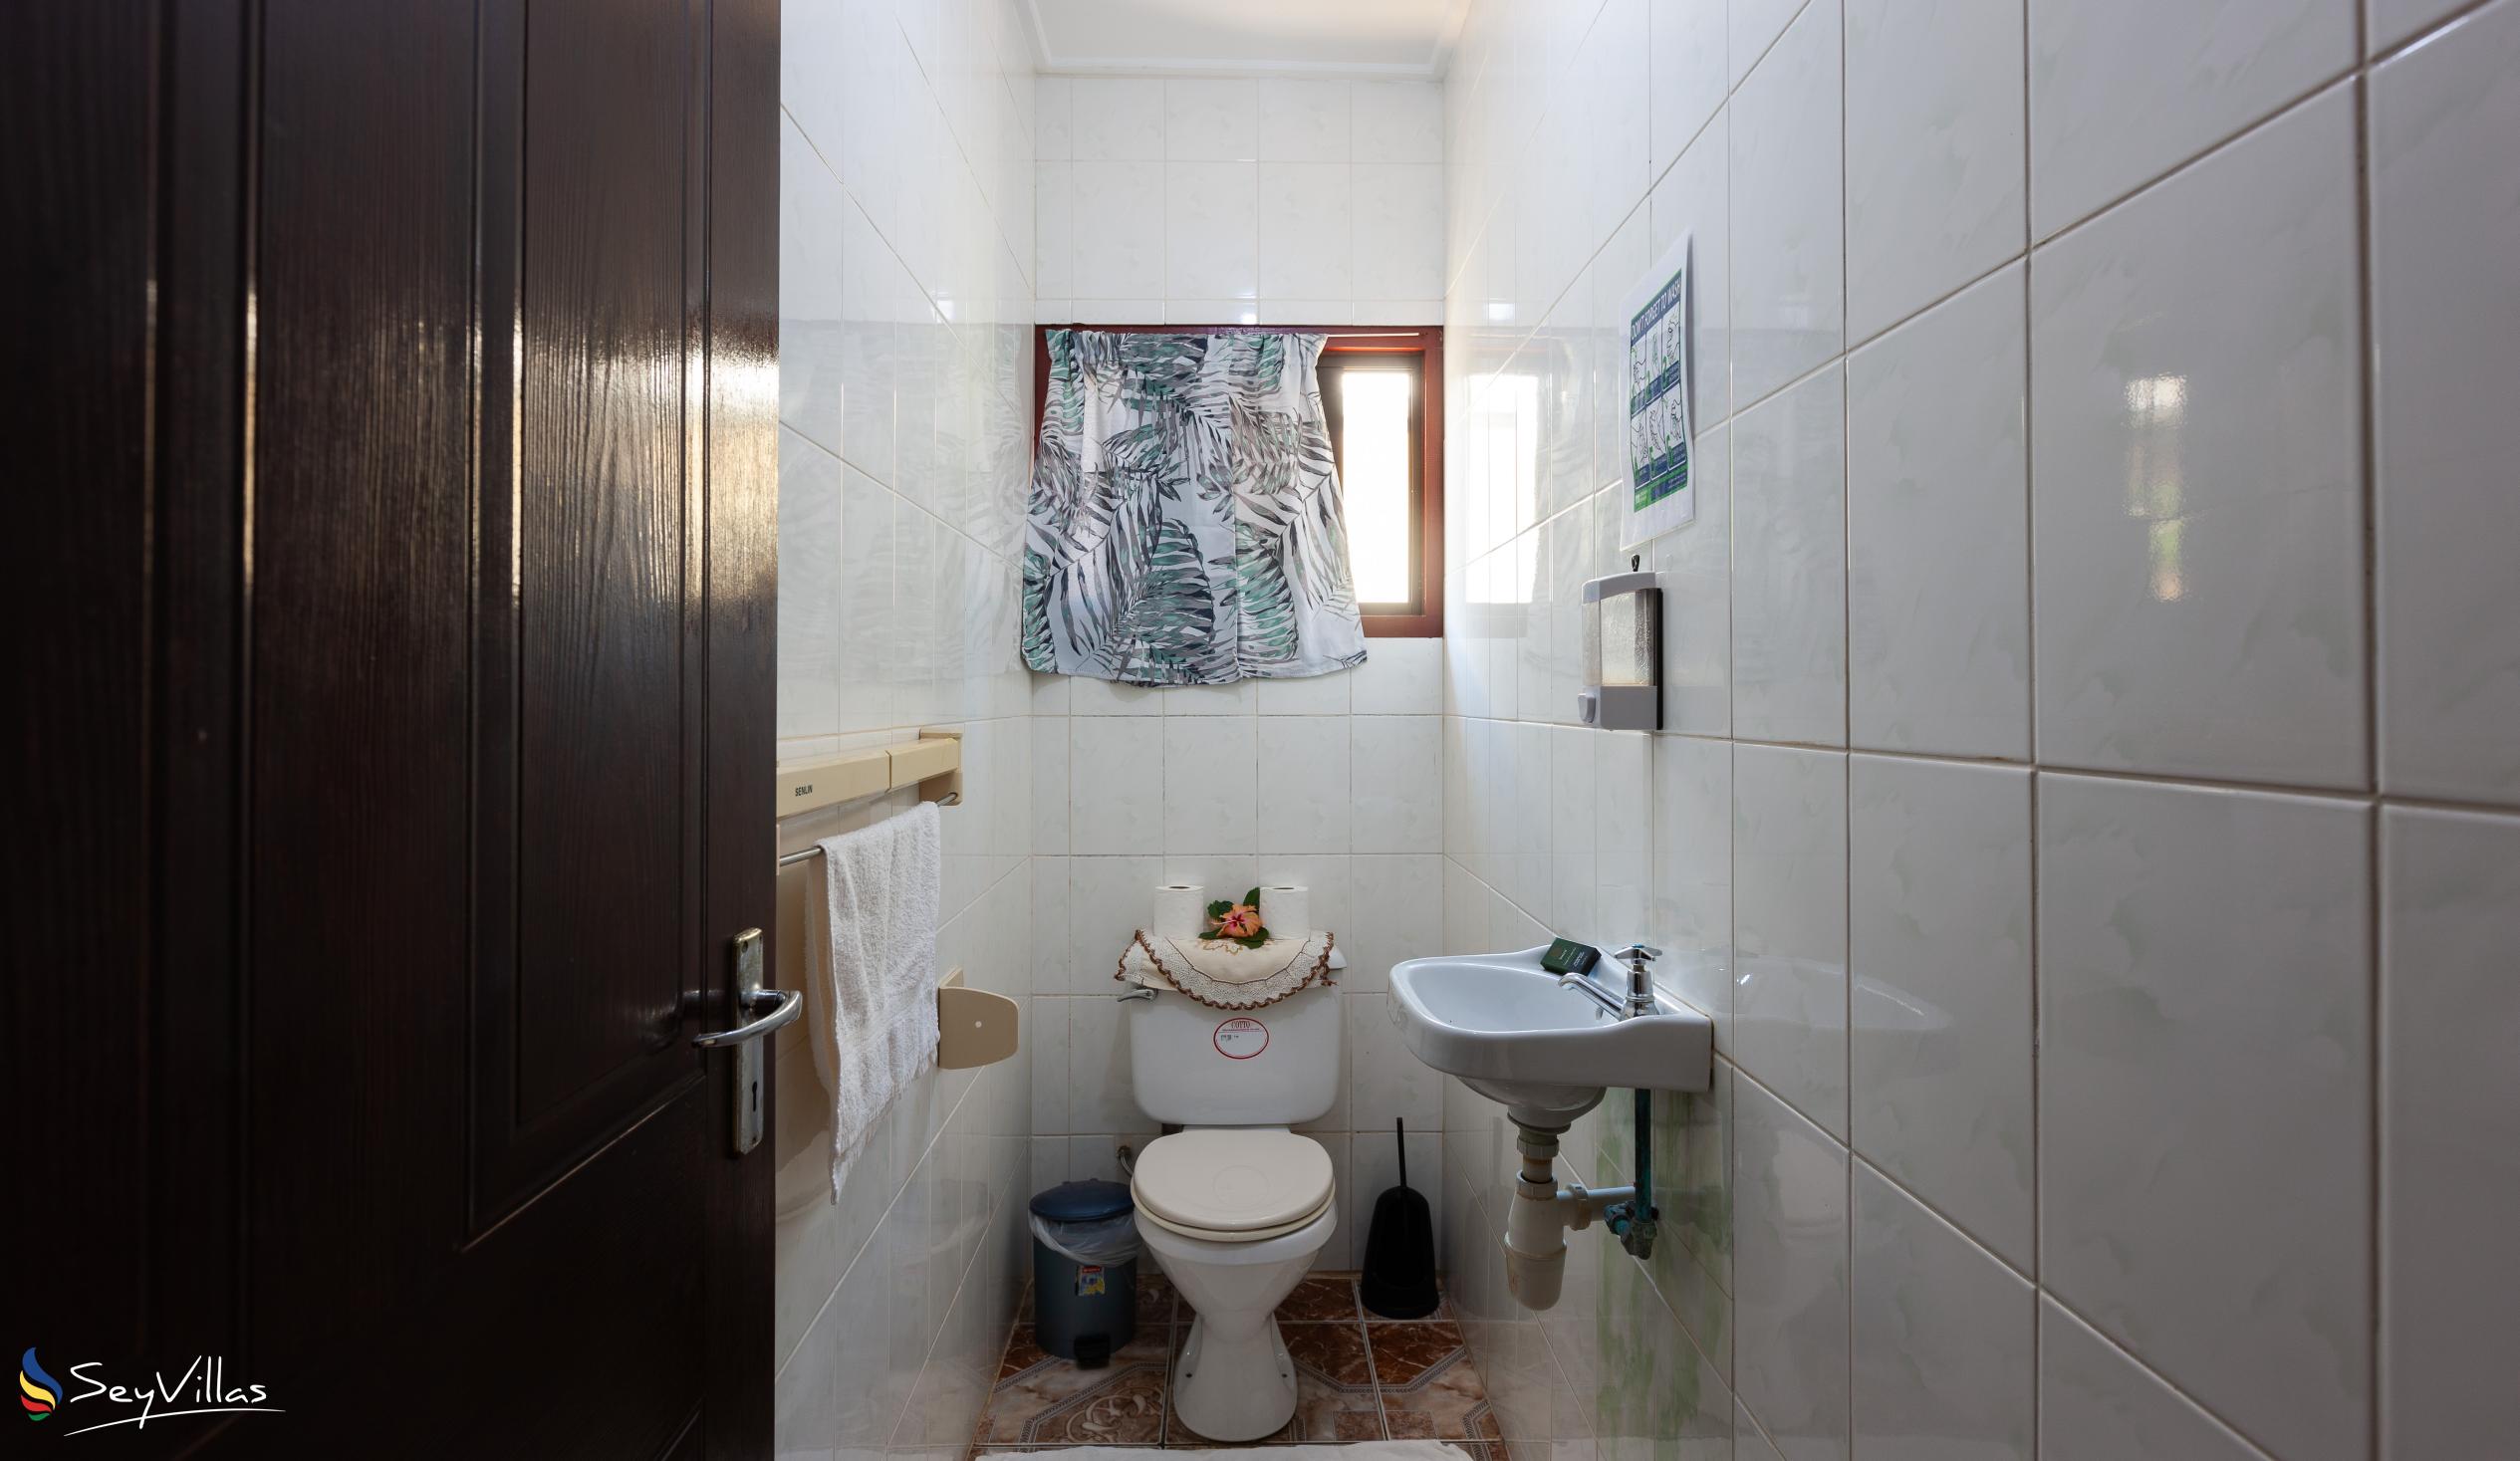 Photo 49: Dan Kazou - 2-Bedroom Apartment - La Digue (Seychelles)